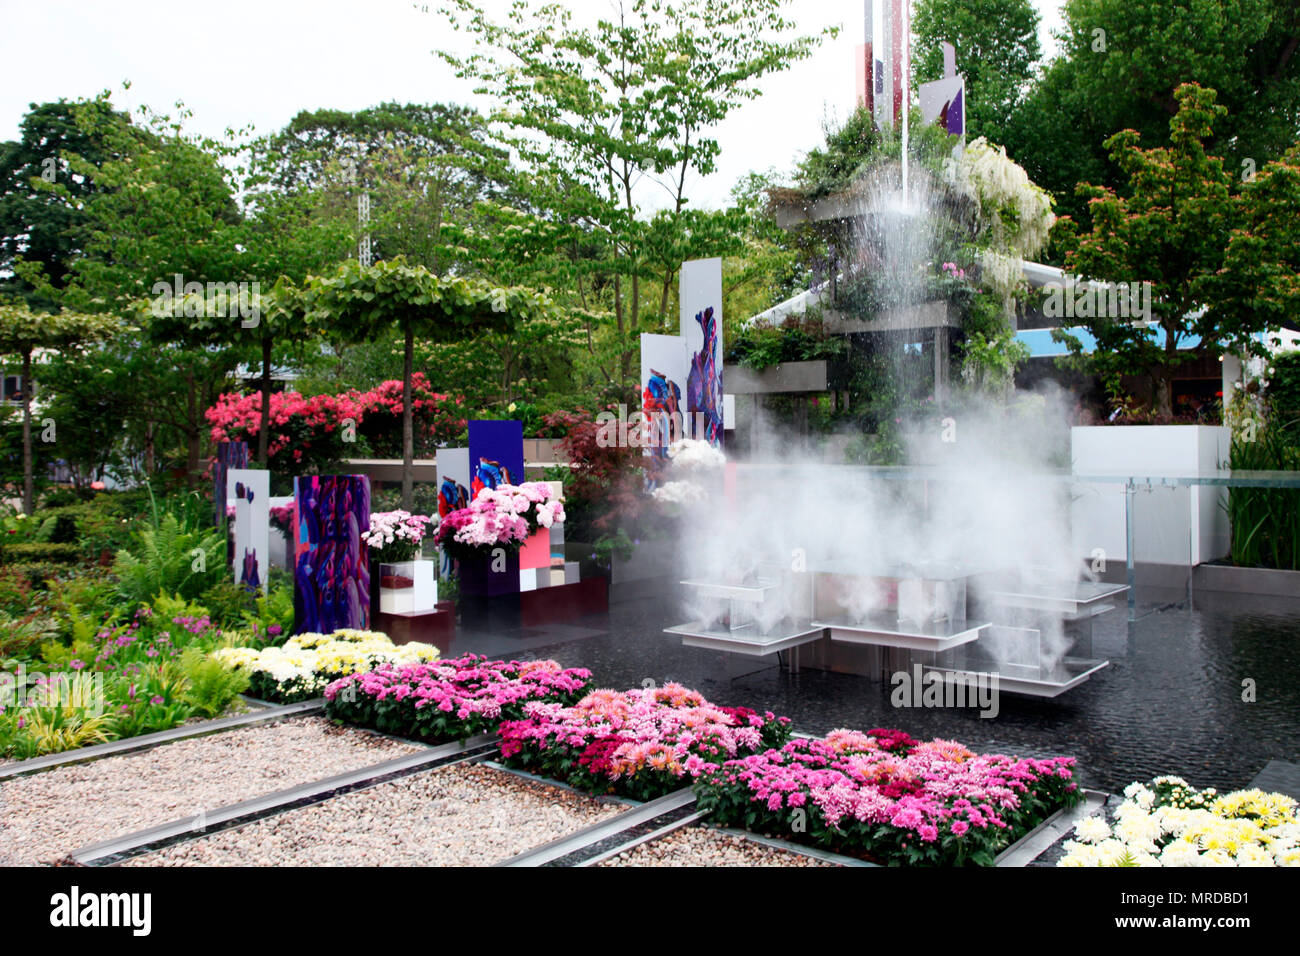 El Jardín Acuático de Wuhan, RHS Chelsea Flower Show 2018 Foto de stock